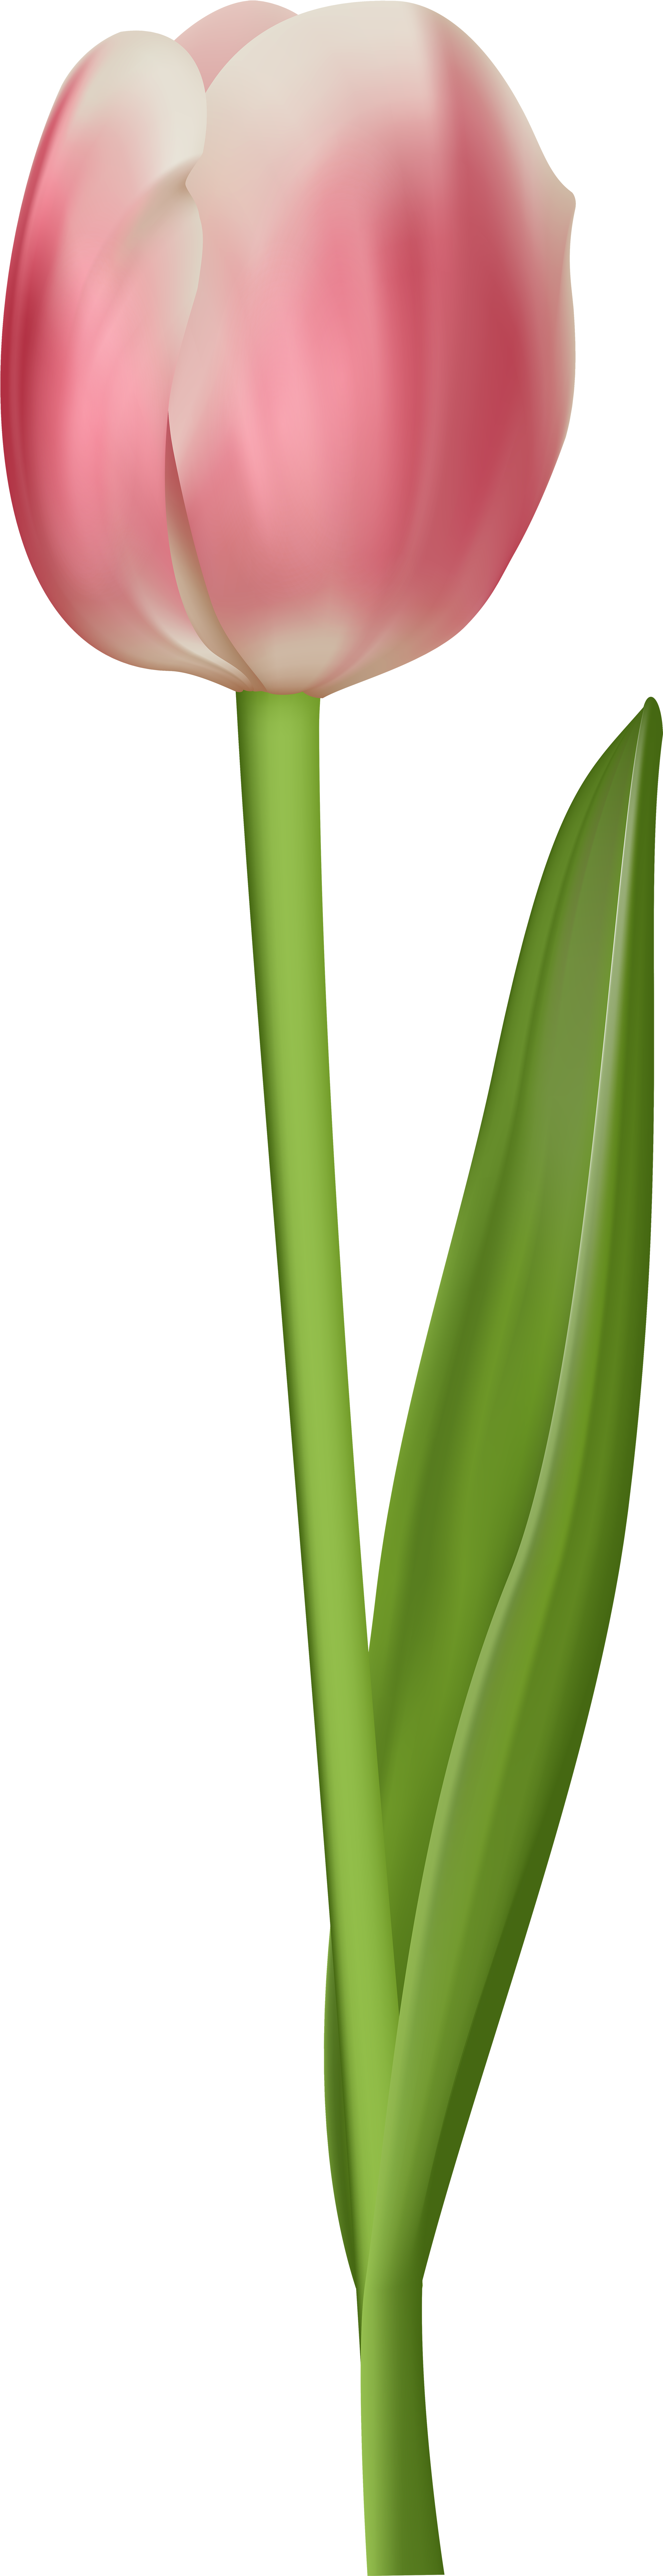 Tulip Clipart Transparent - Tulip Transparent (2184x8000)